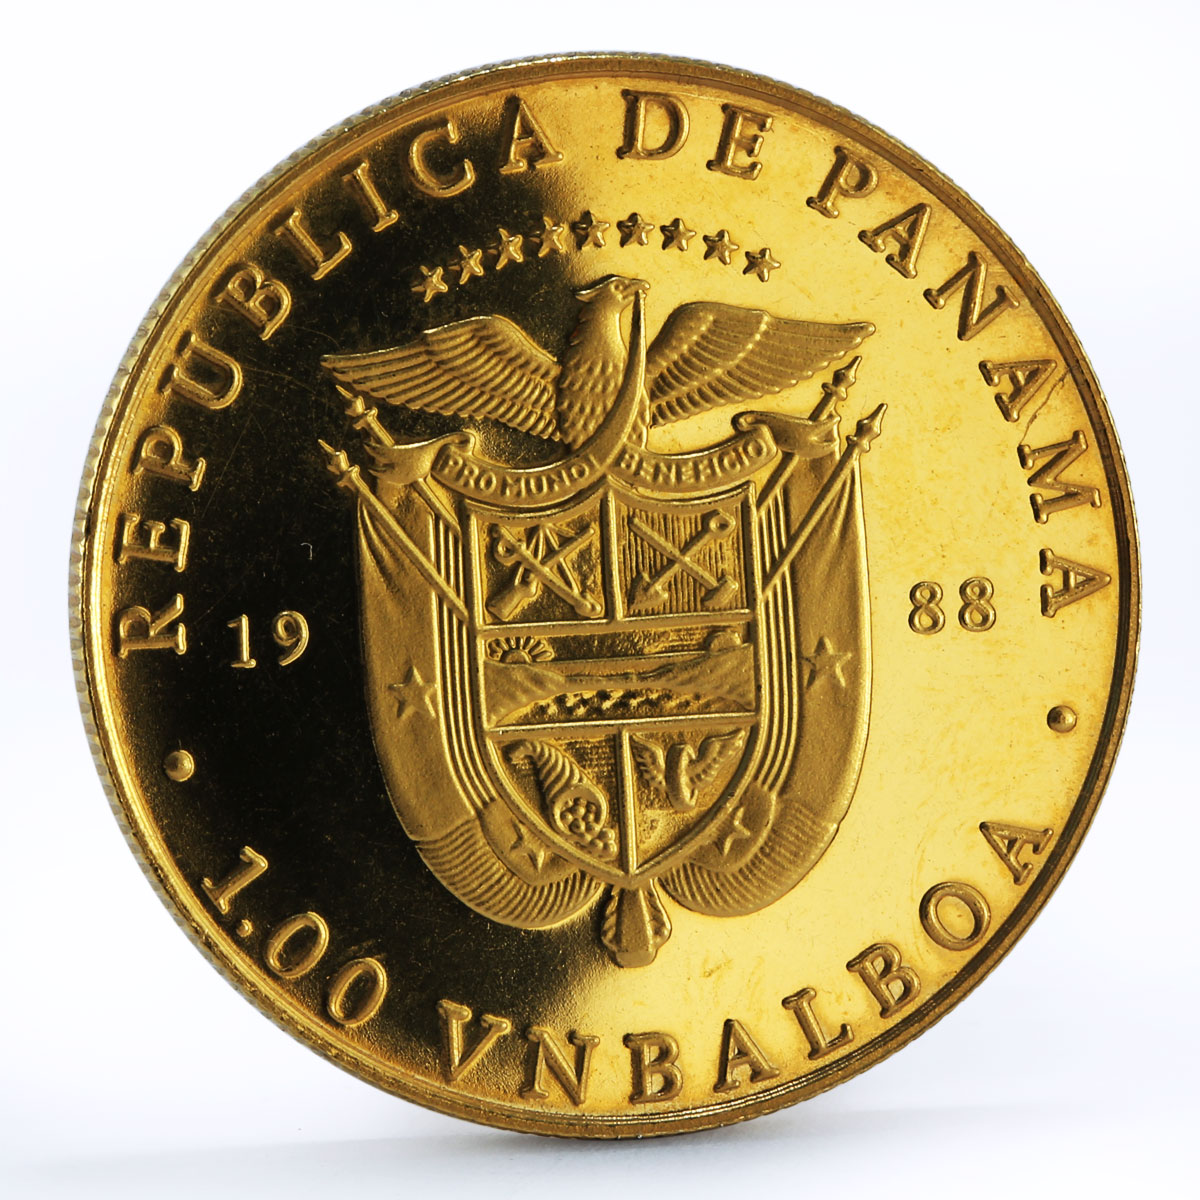 Panama 1 balboa President John Kennedy Statesman Bell Politics CuNi coin 1988